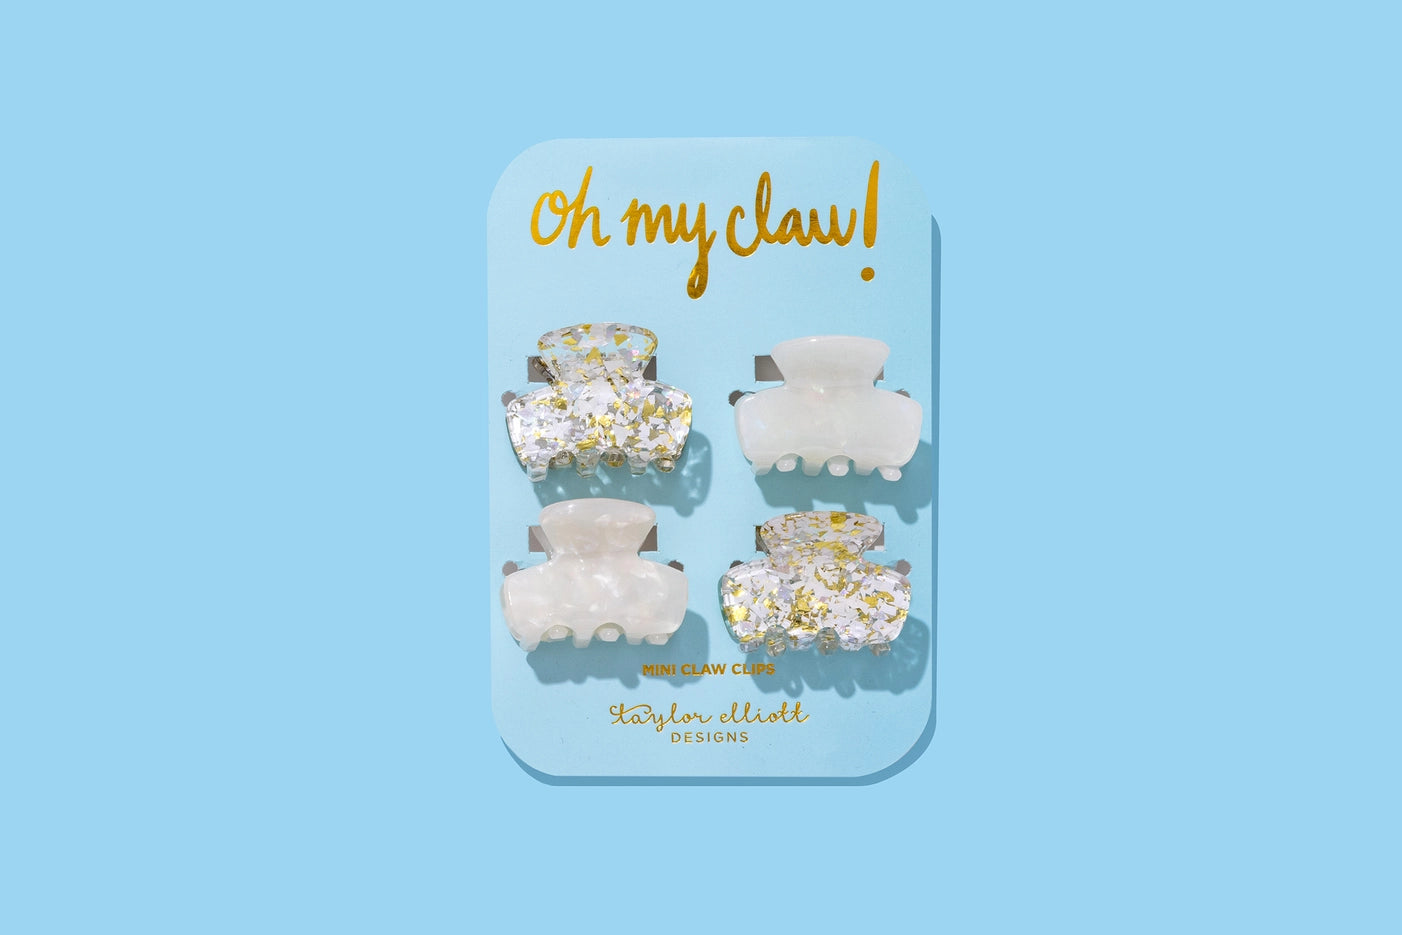 Mini Claw Clips - Pearl Confetti